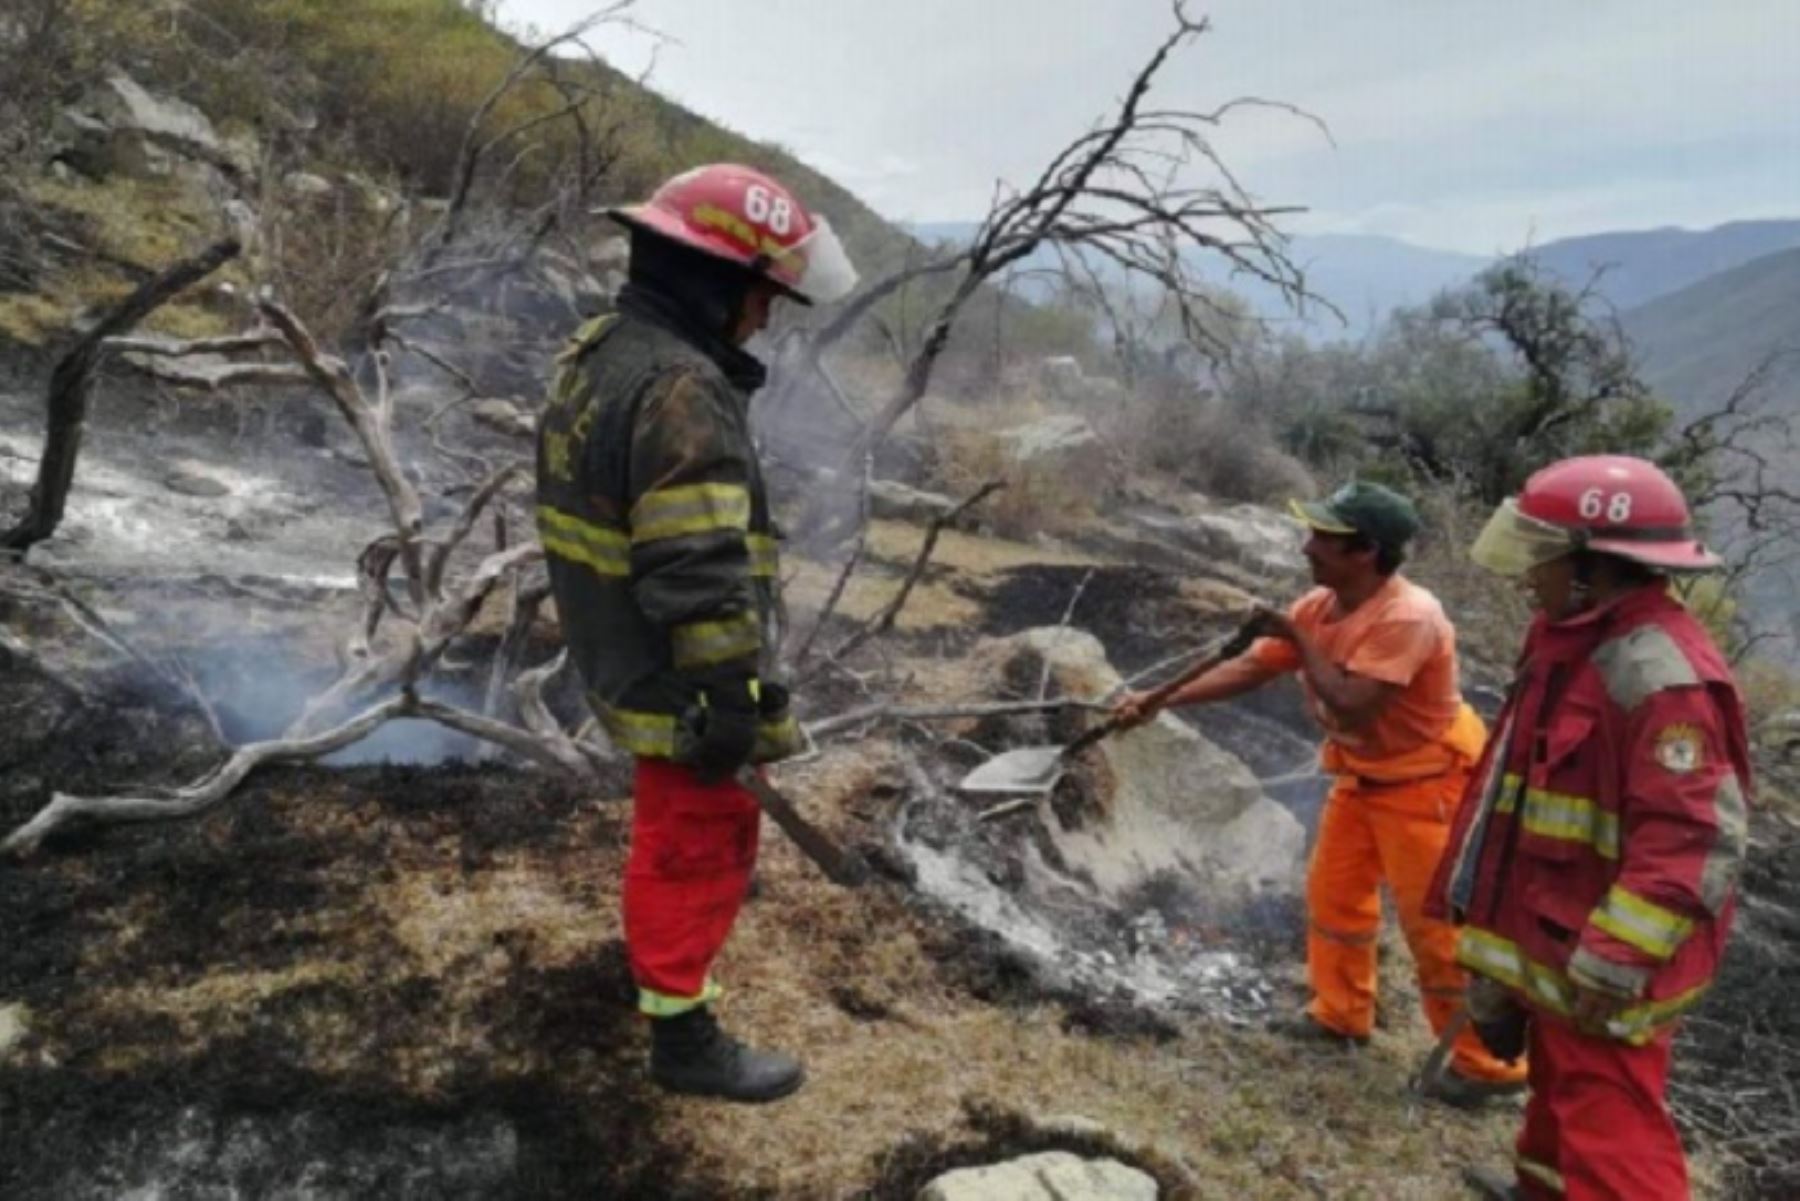 Los incendios forestales que se presentaron en los distritos de Tamburco y Lambrama (Apurímac), Totorani (Puno) e Incahuasi (Lambayeque) fueron extinguidos en su totalidad por los e bomberos, personal de los municipios locales y pobladores del lugar, informó el Instituto Nacional de Defensa Civil (Indeci).